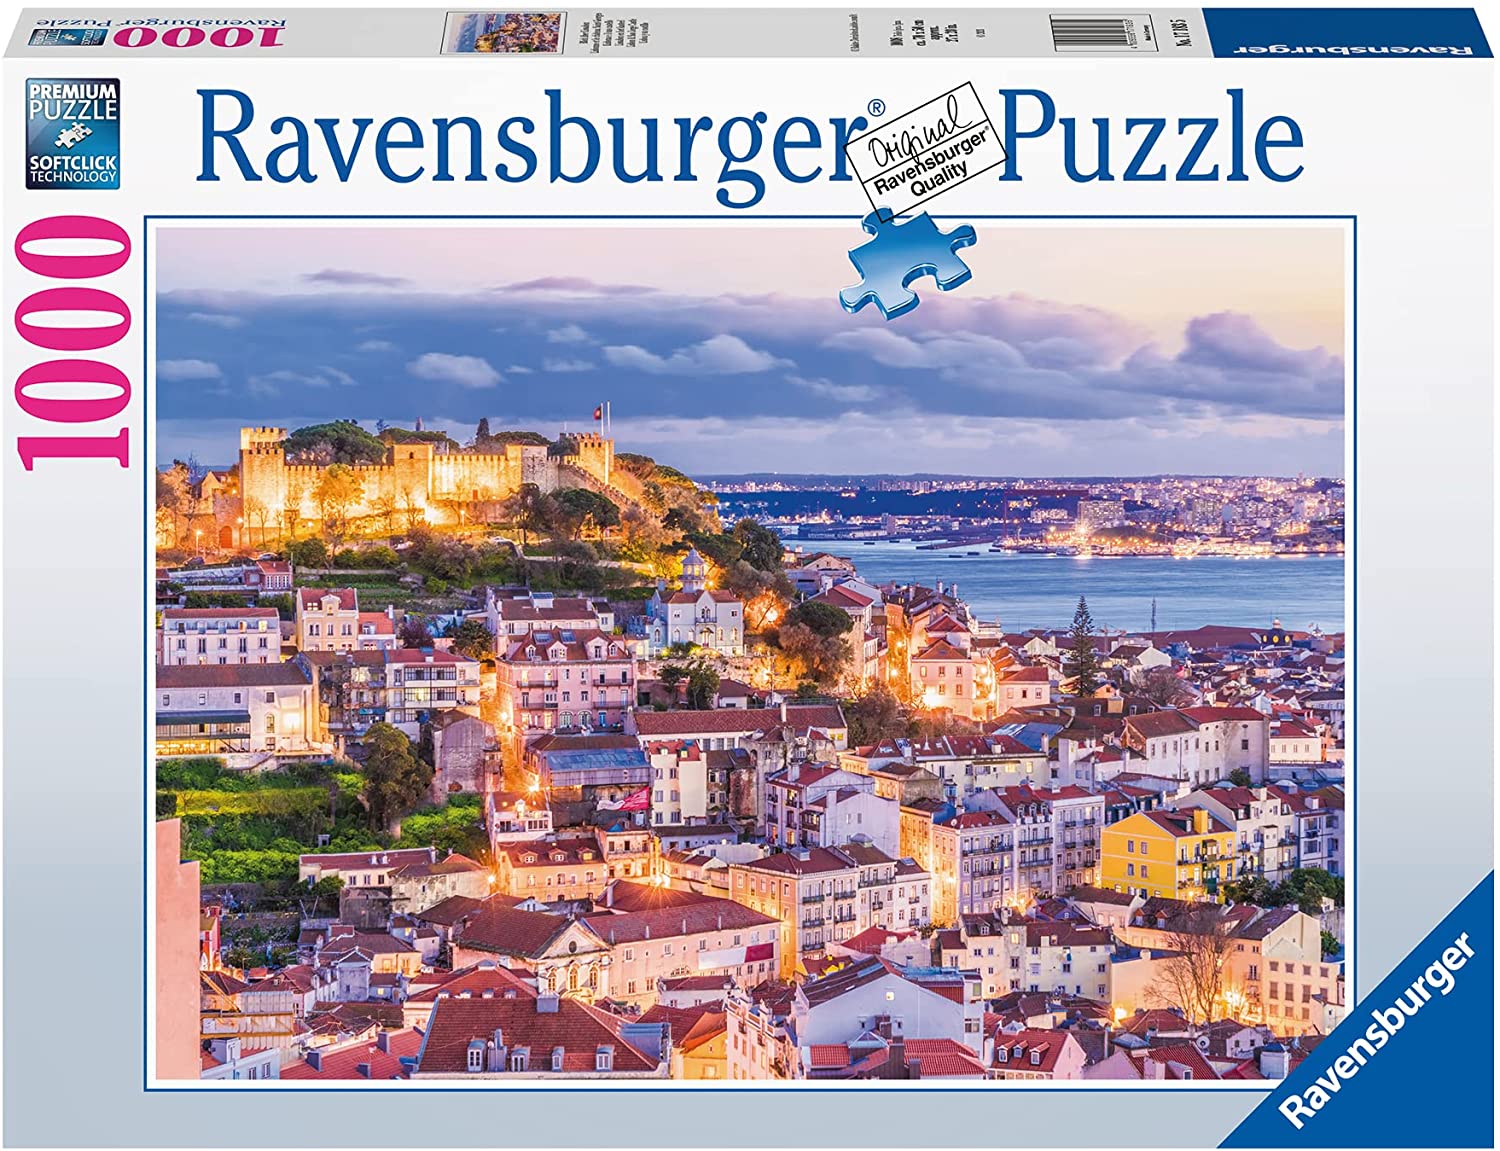 Ravensburger Lisbon & Sao Jorge Castle 1000 Piece Puzzle